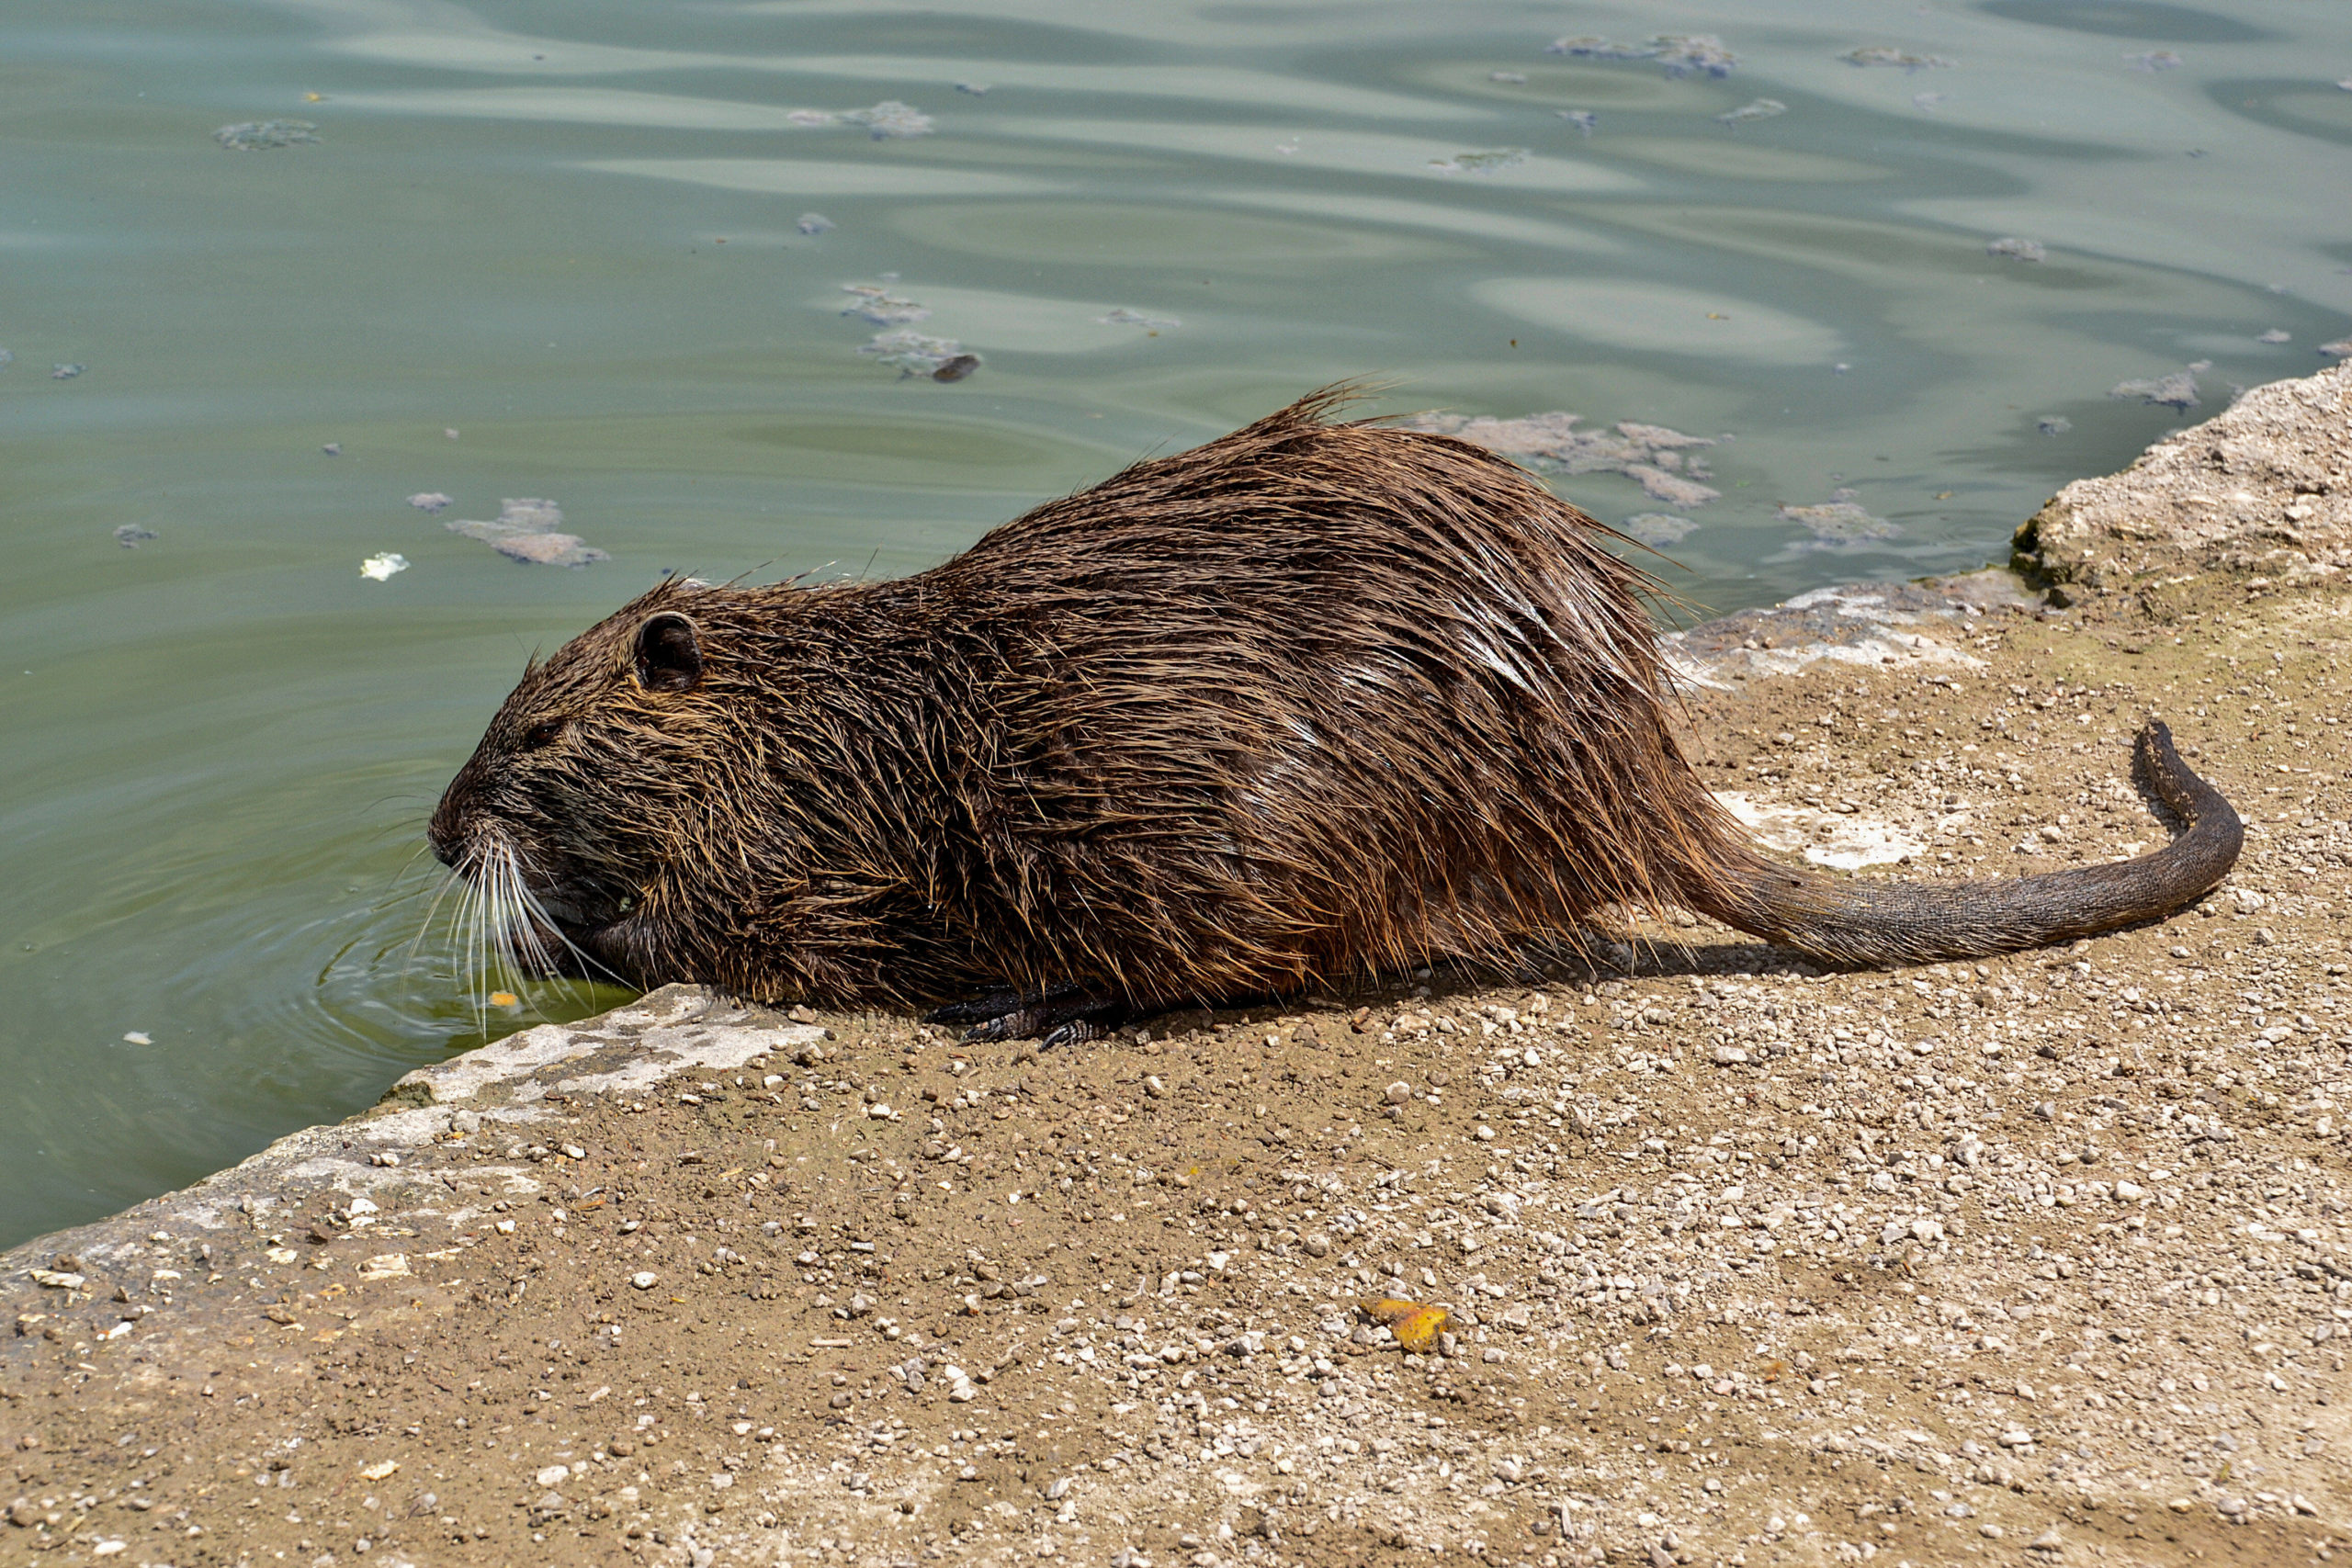 Invasive Arten in Berlin: Nutria sehen ein bisschen aus wie übergroße Meerschweinchen. 